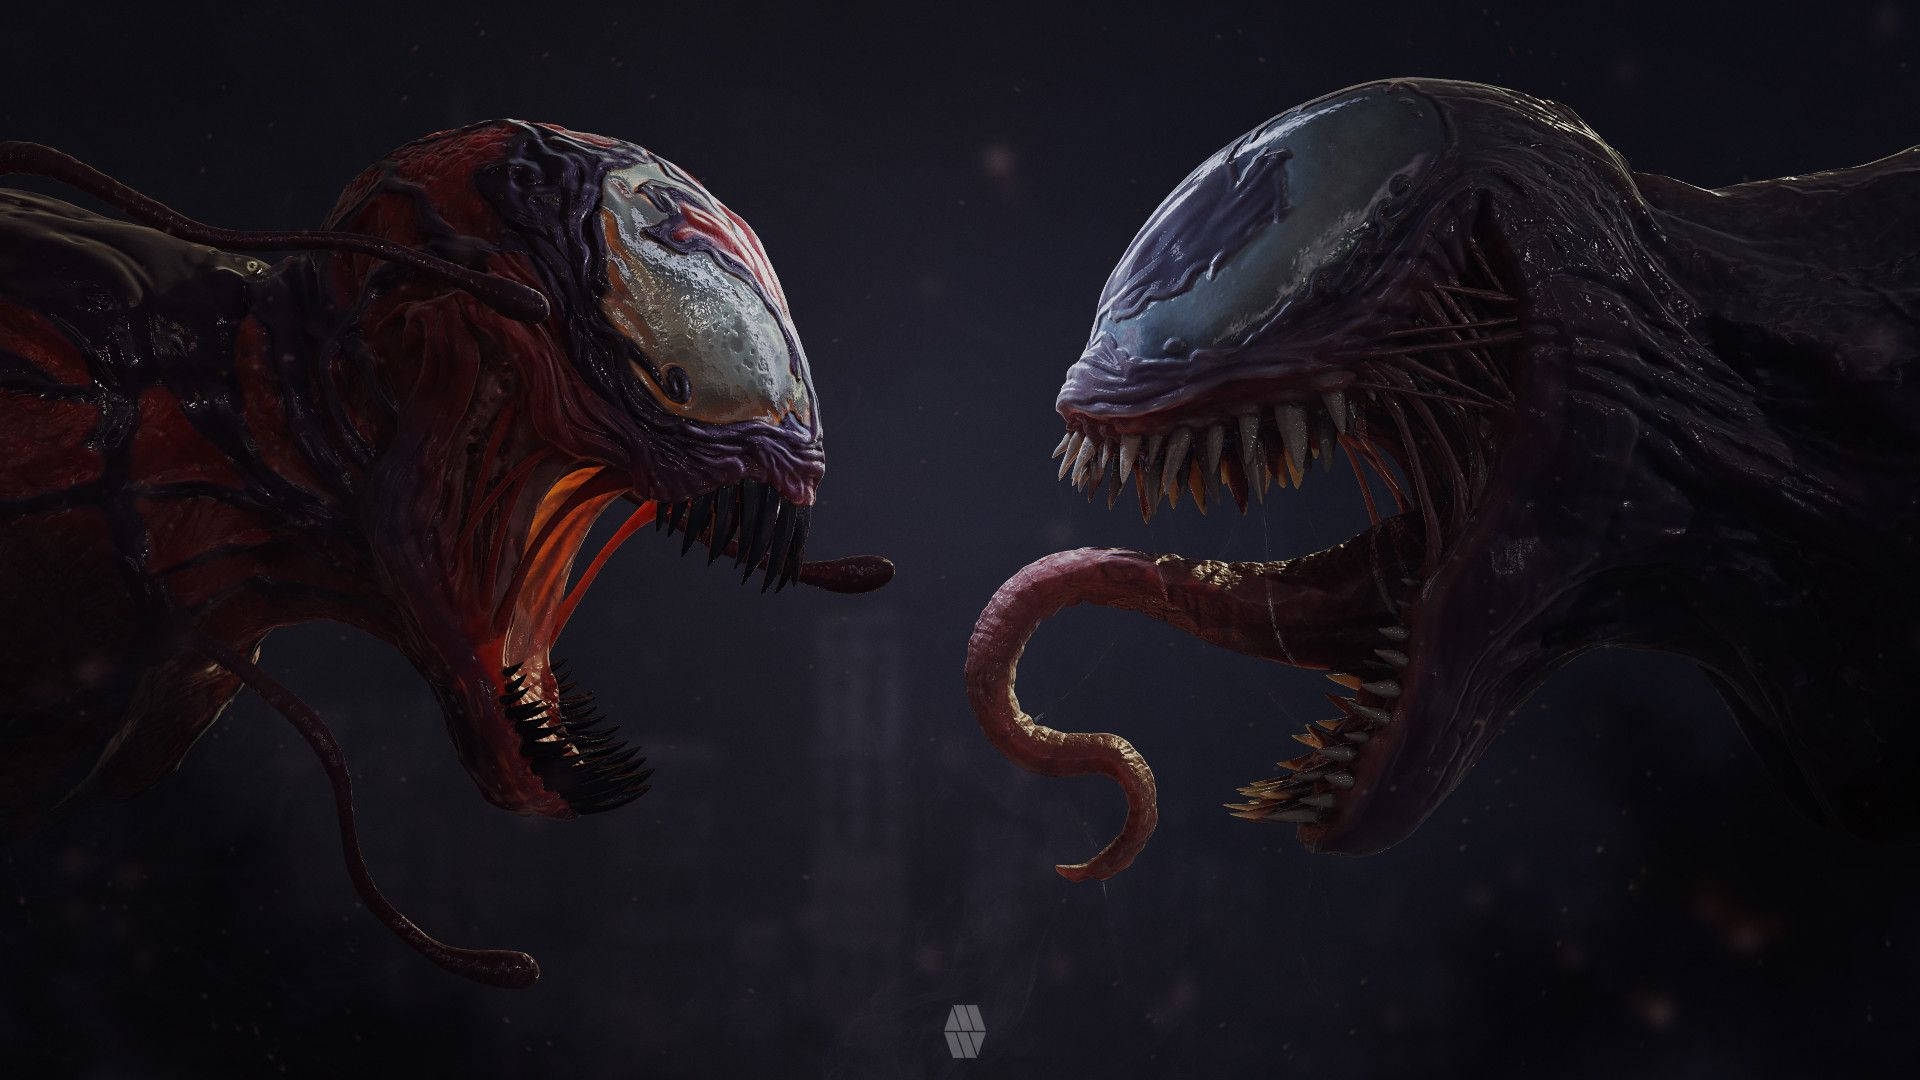 Venom vs Carnage, who will win? Wallpaper